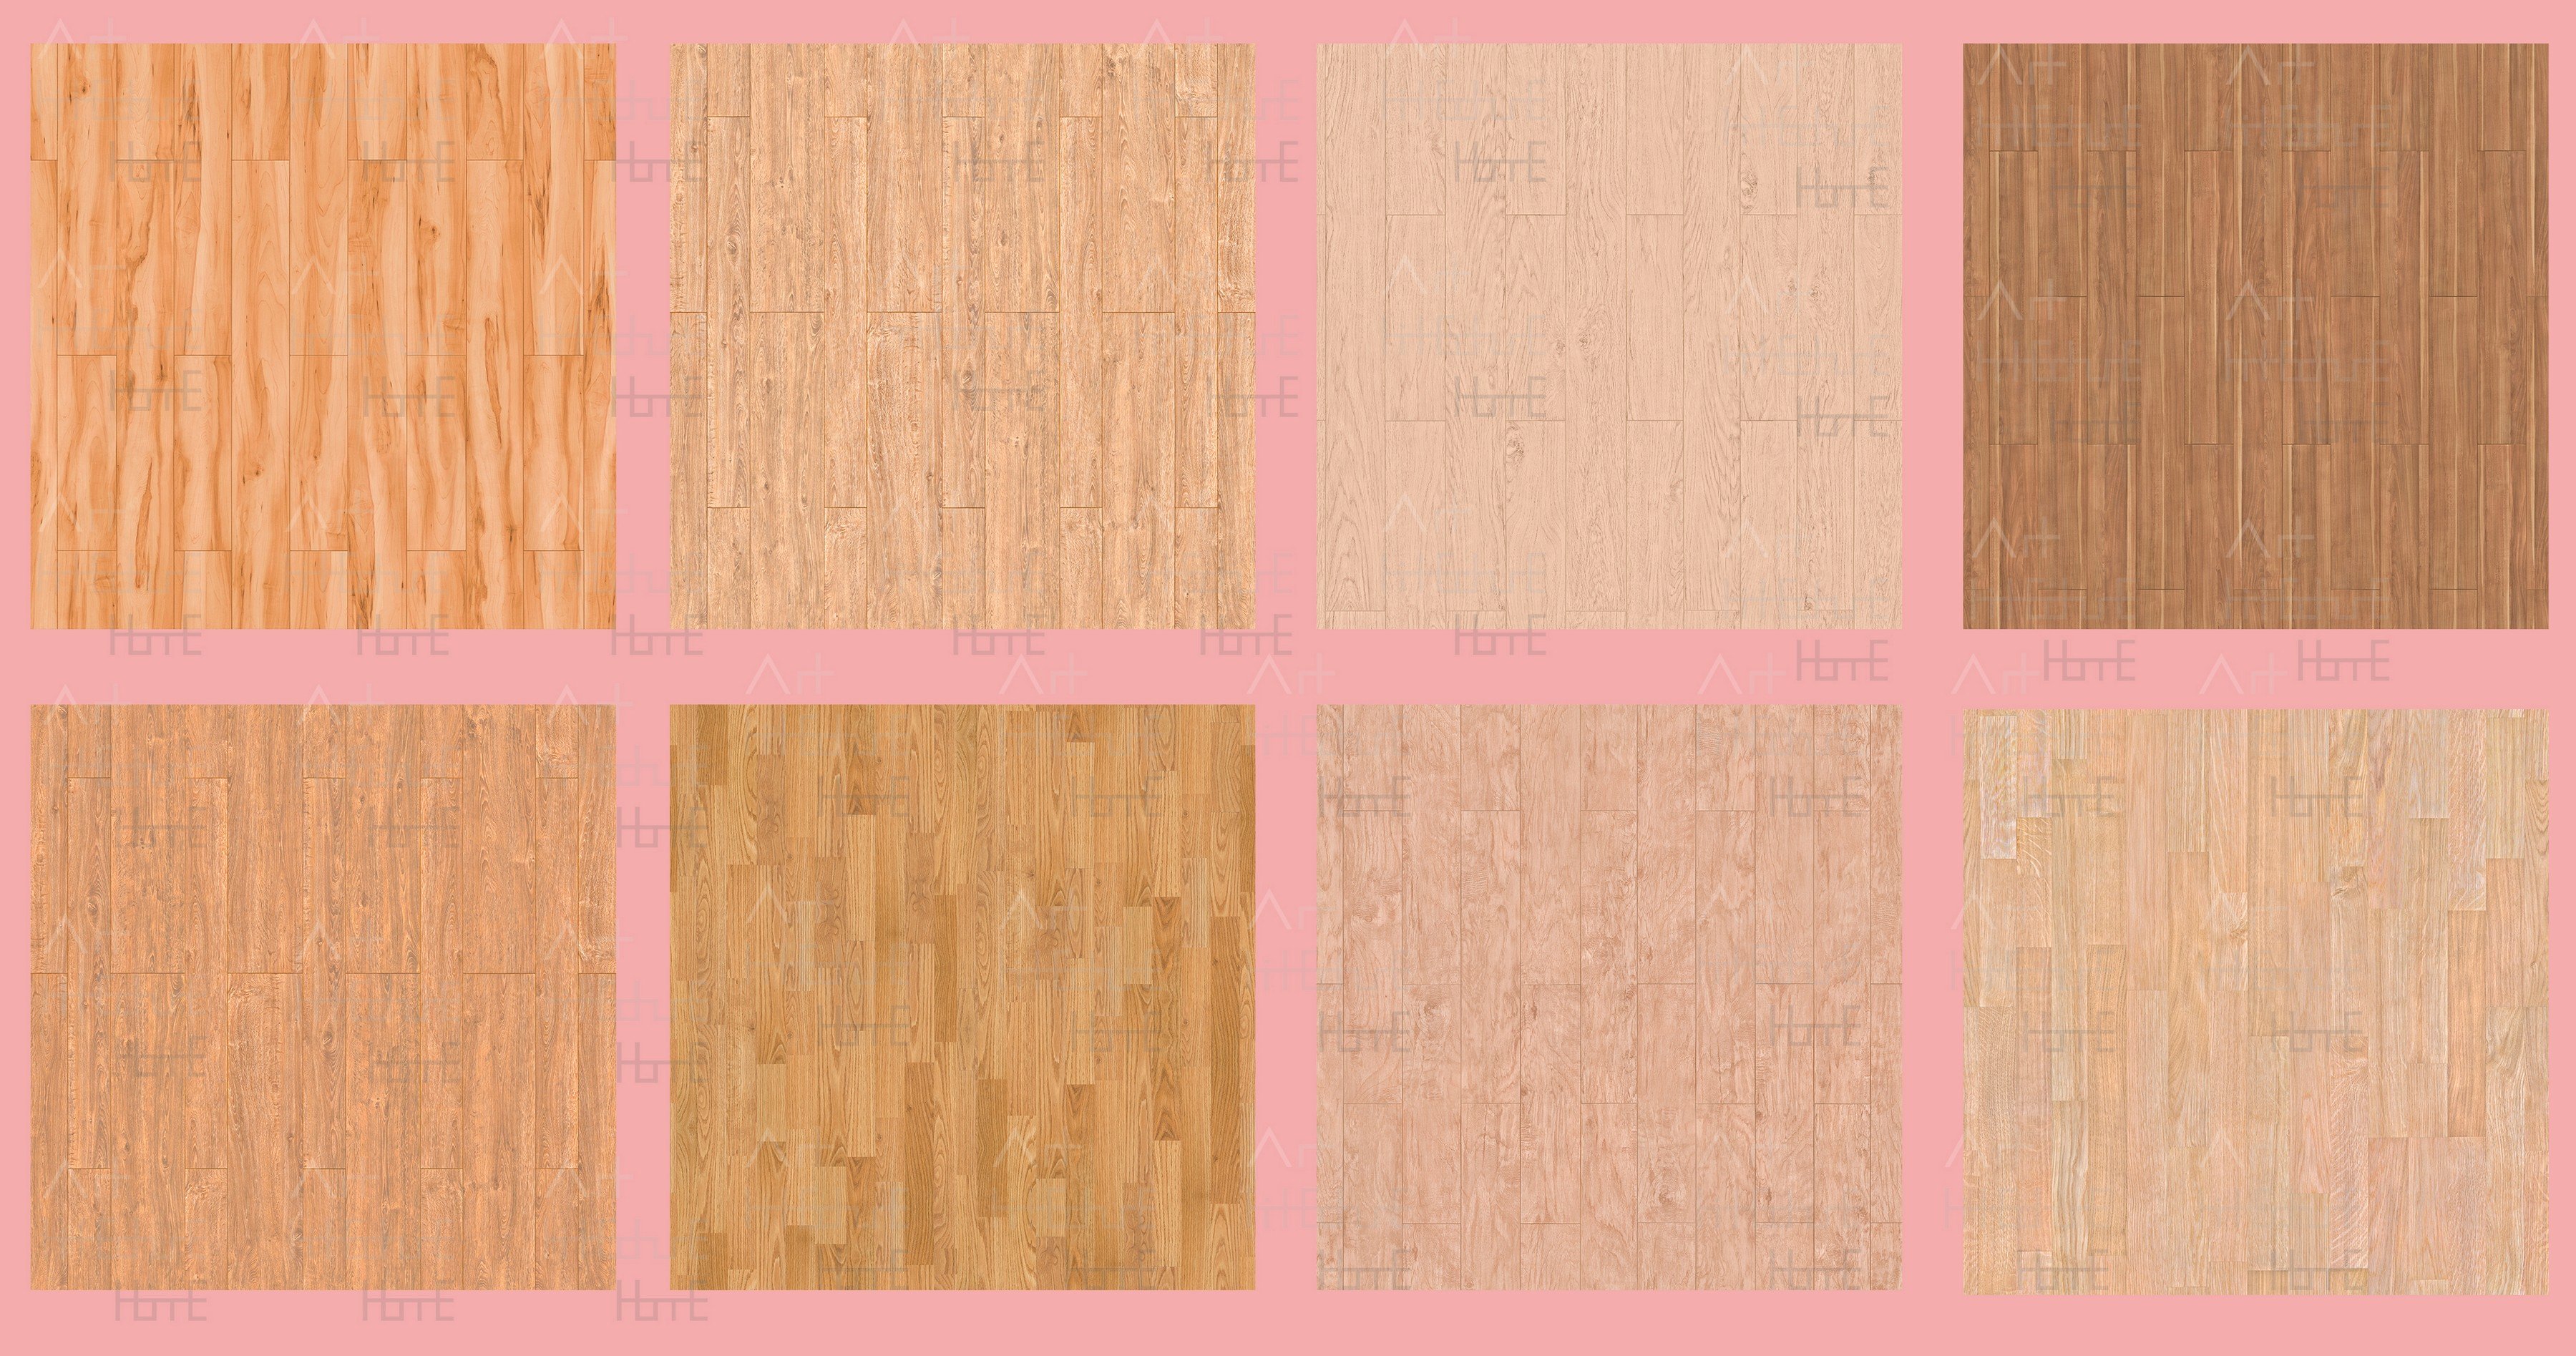 Wooden Floor Digital Scrapbook Paper Pack, Seamless Wooden